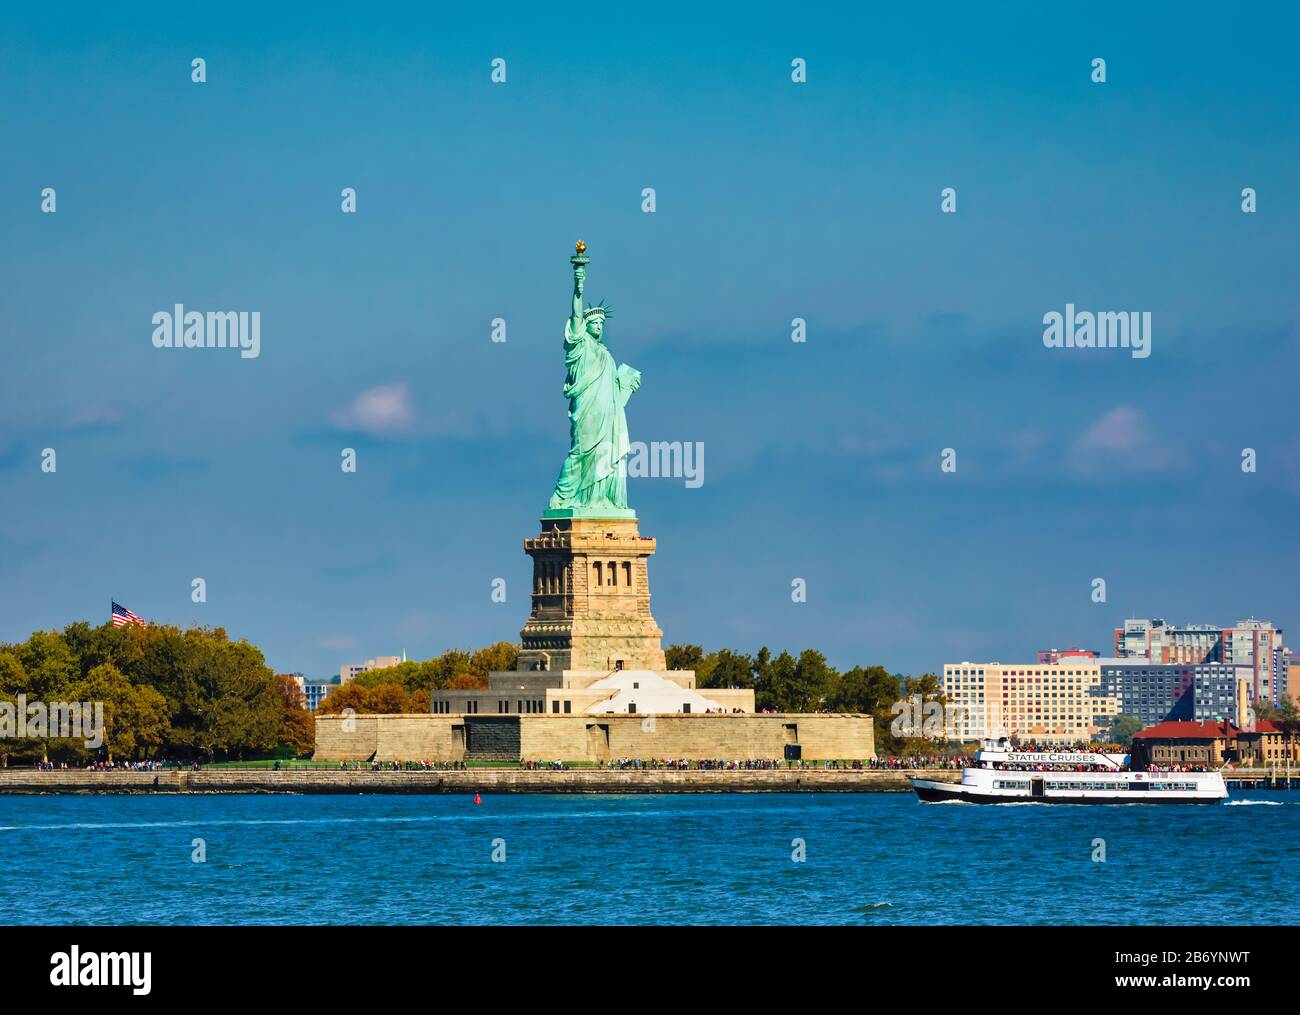 Statue De La Liberté Sur Liberty Island, New York, État De New York, États-Unis D'Amérique. La statue de 46 mètres de haut était un cadeau pour les États-Unis Banque D'Images